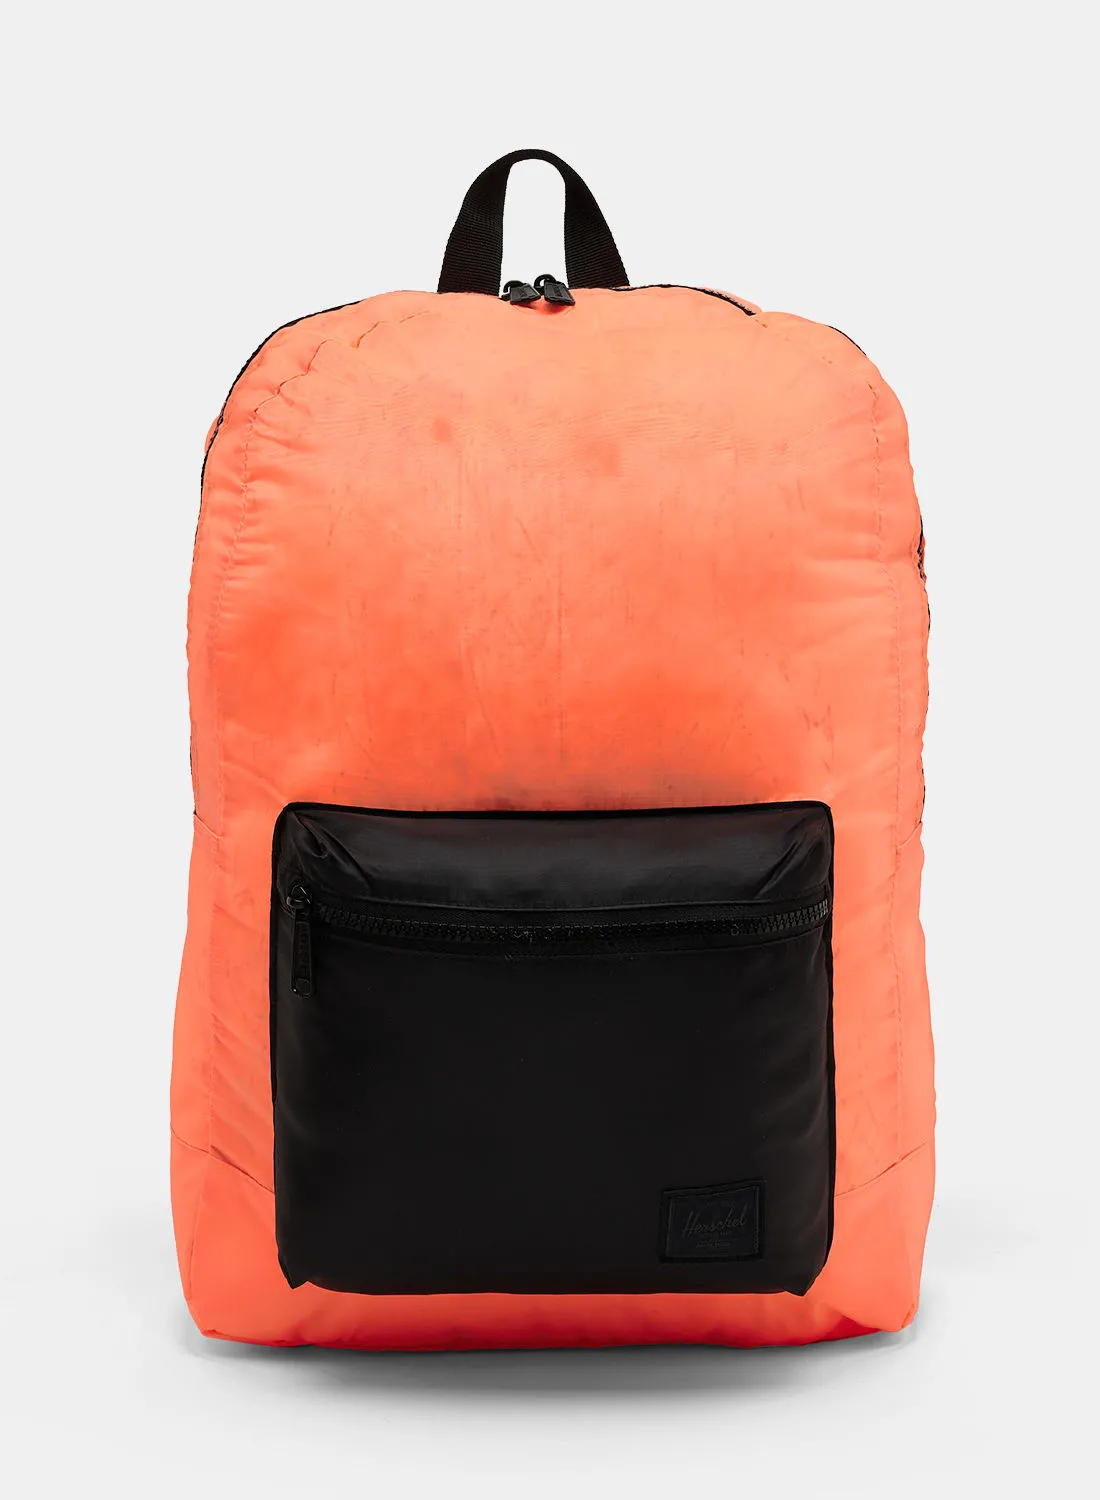 Herschel Packable Daypack Backpack 24.5 Litres Neon Orange/Black